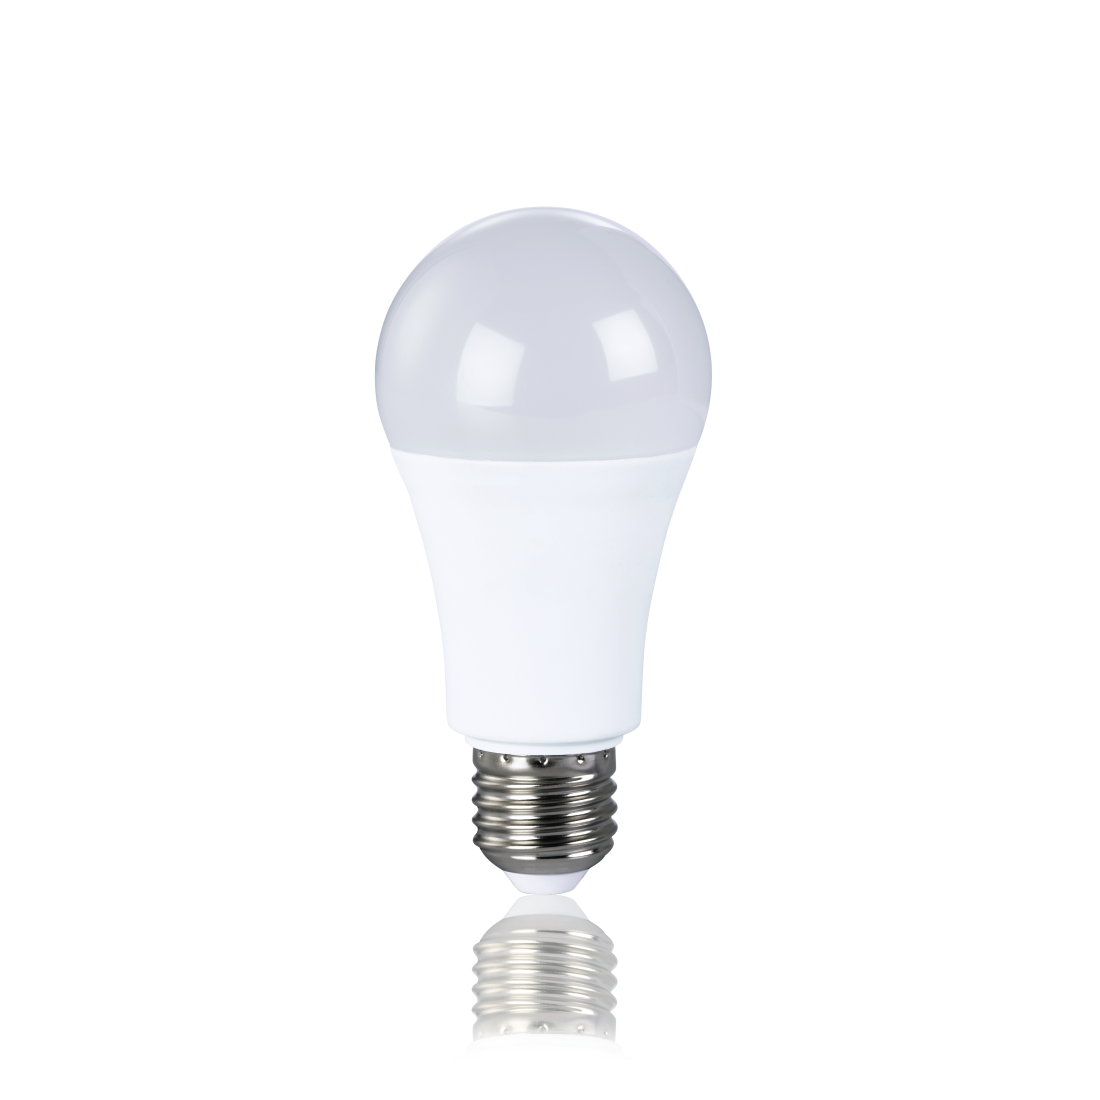 abx2 Druckfähige Abbildung 2 - Xavax, LED-Lampe, E27, 800lm ersetzt 60W, Glühlampe, Warm-/Neutralweiß/Tageslicht